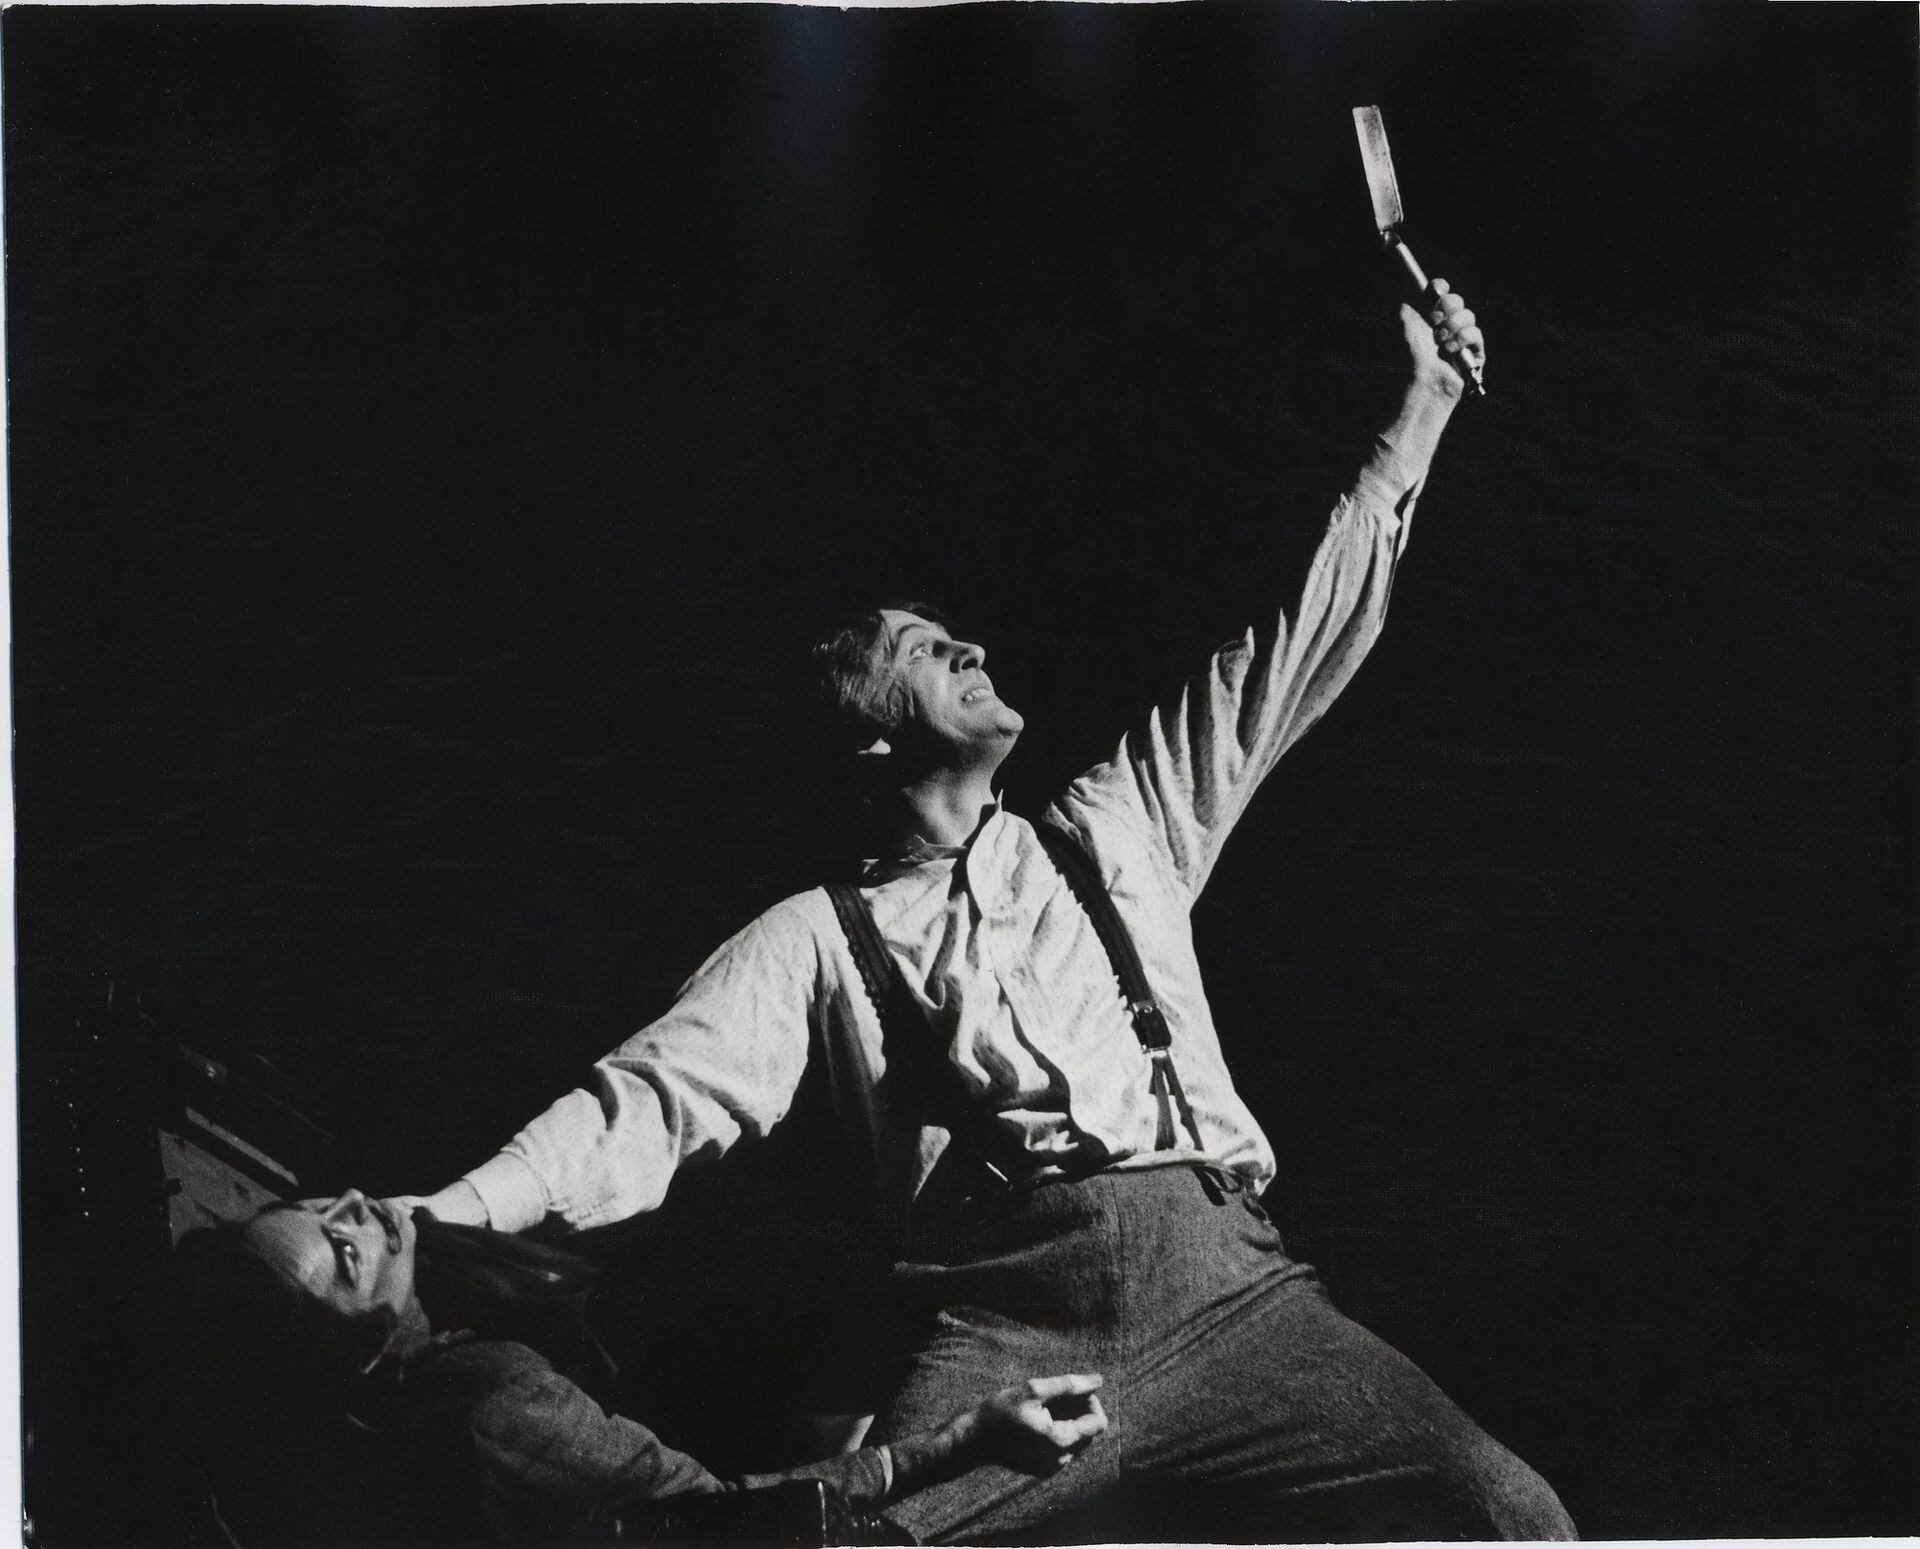 Len Cariou como Sweeney Todd, 1979